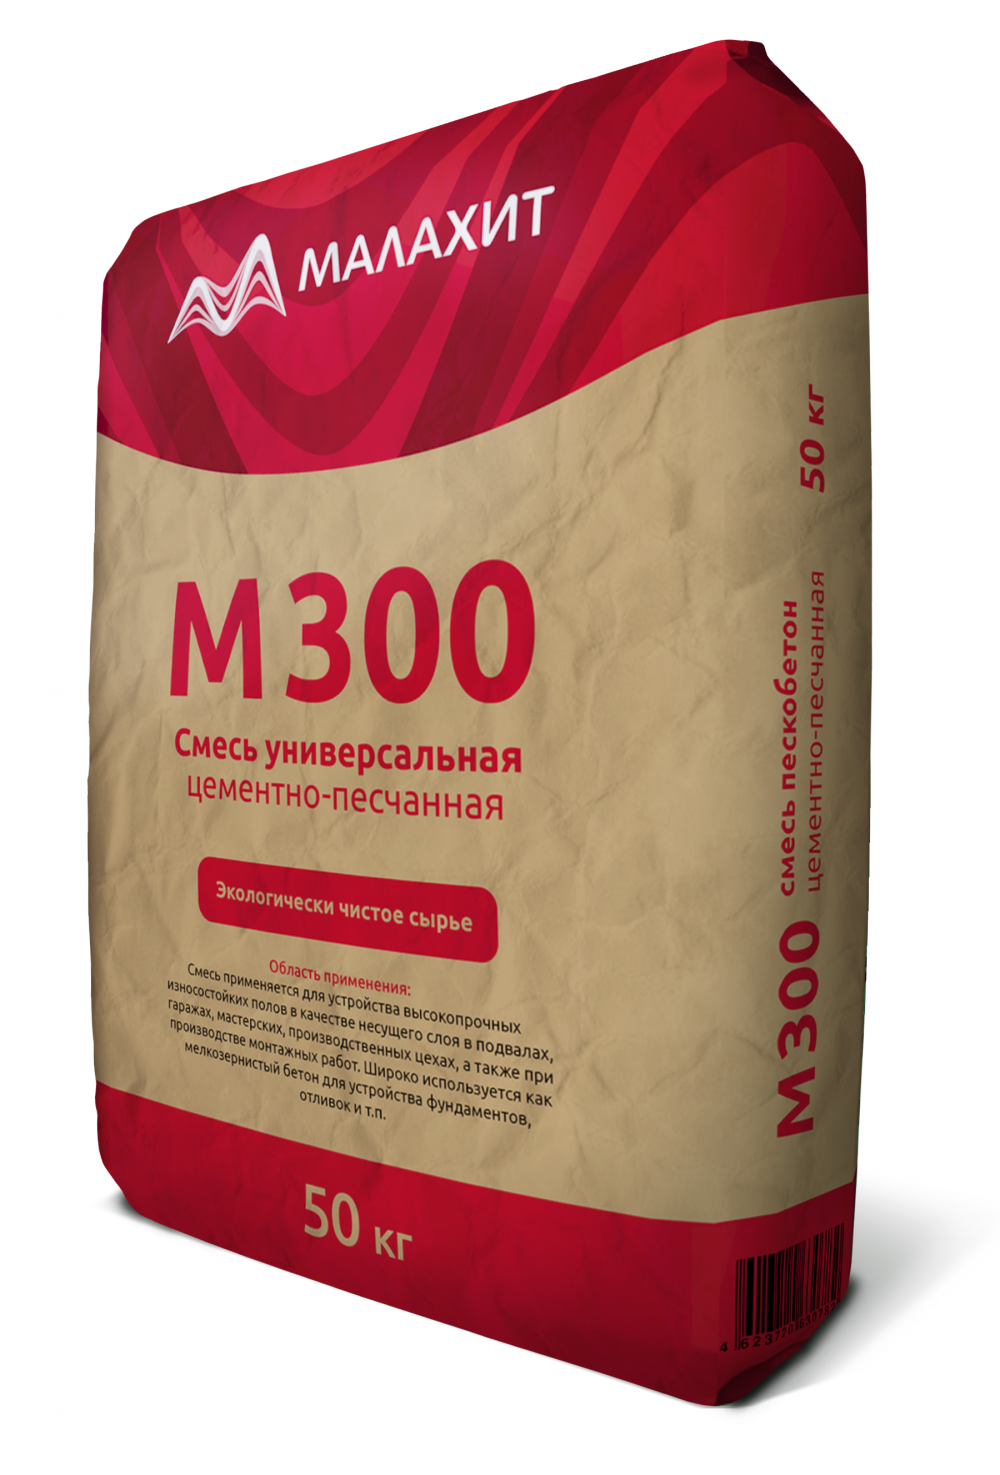 Сухая смесь М300 «Малахит» пескобетон ГОСТ 28013-98, 50кг